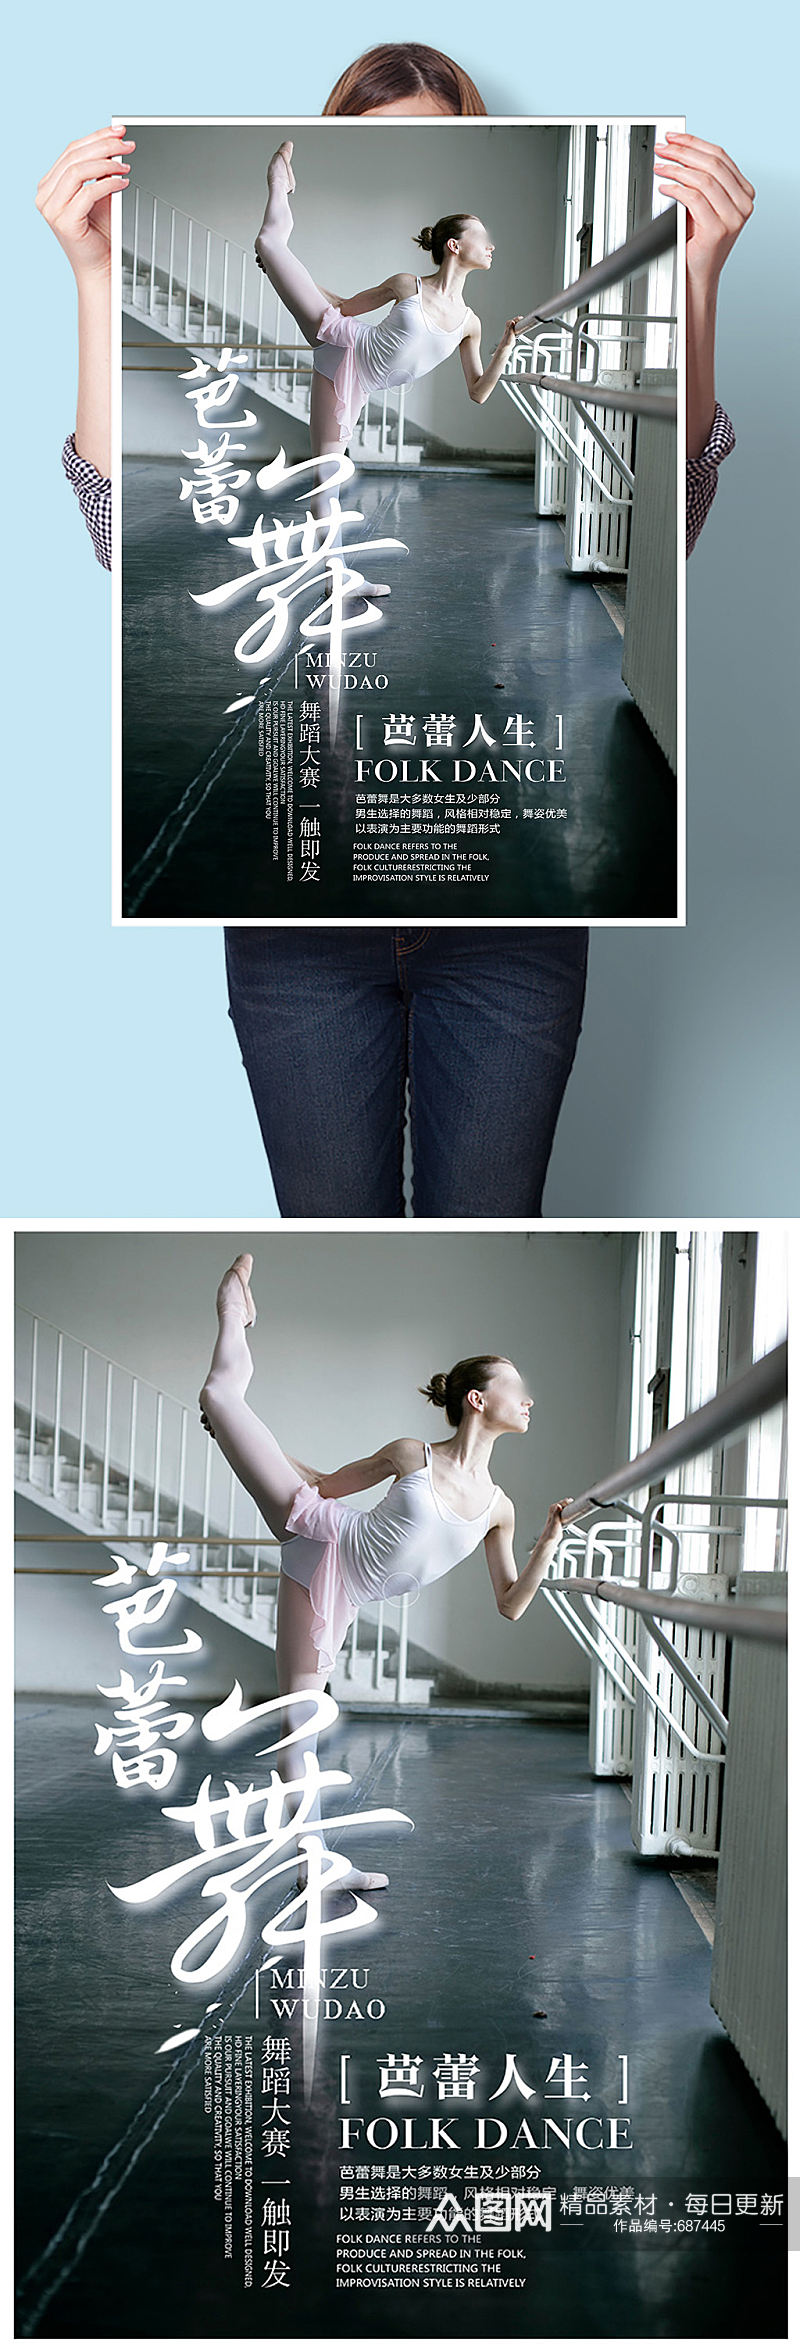 芭蕾舞舞蹈培训班招生报名海报素材